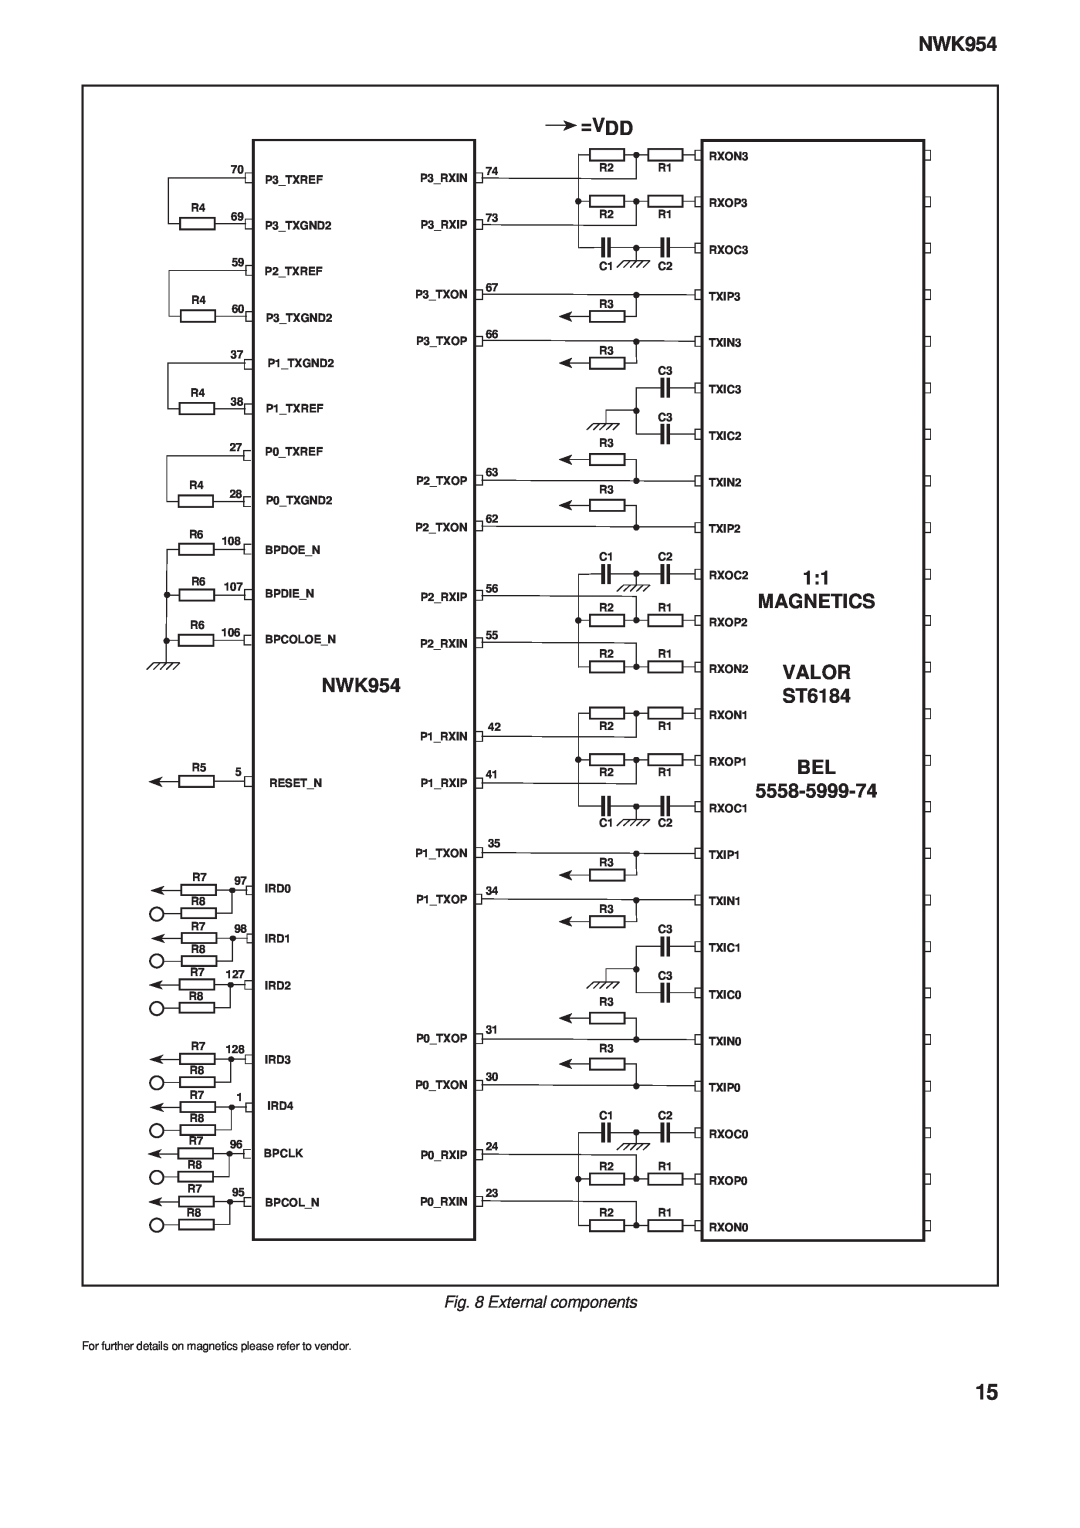 Mitel NWK954 manual =V Dd, Magnetics, Valor, ST6184, 5558-5999-74, External components 